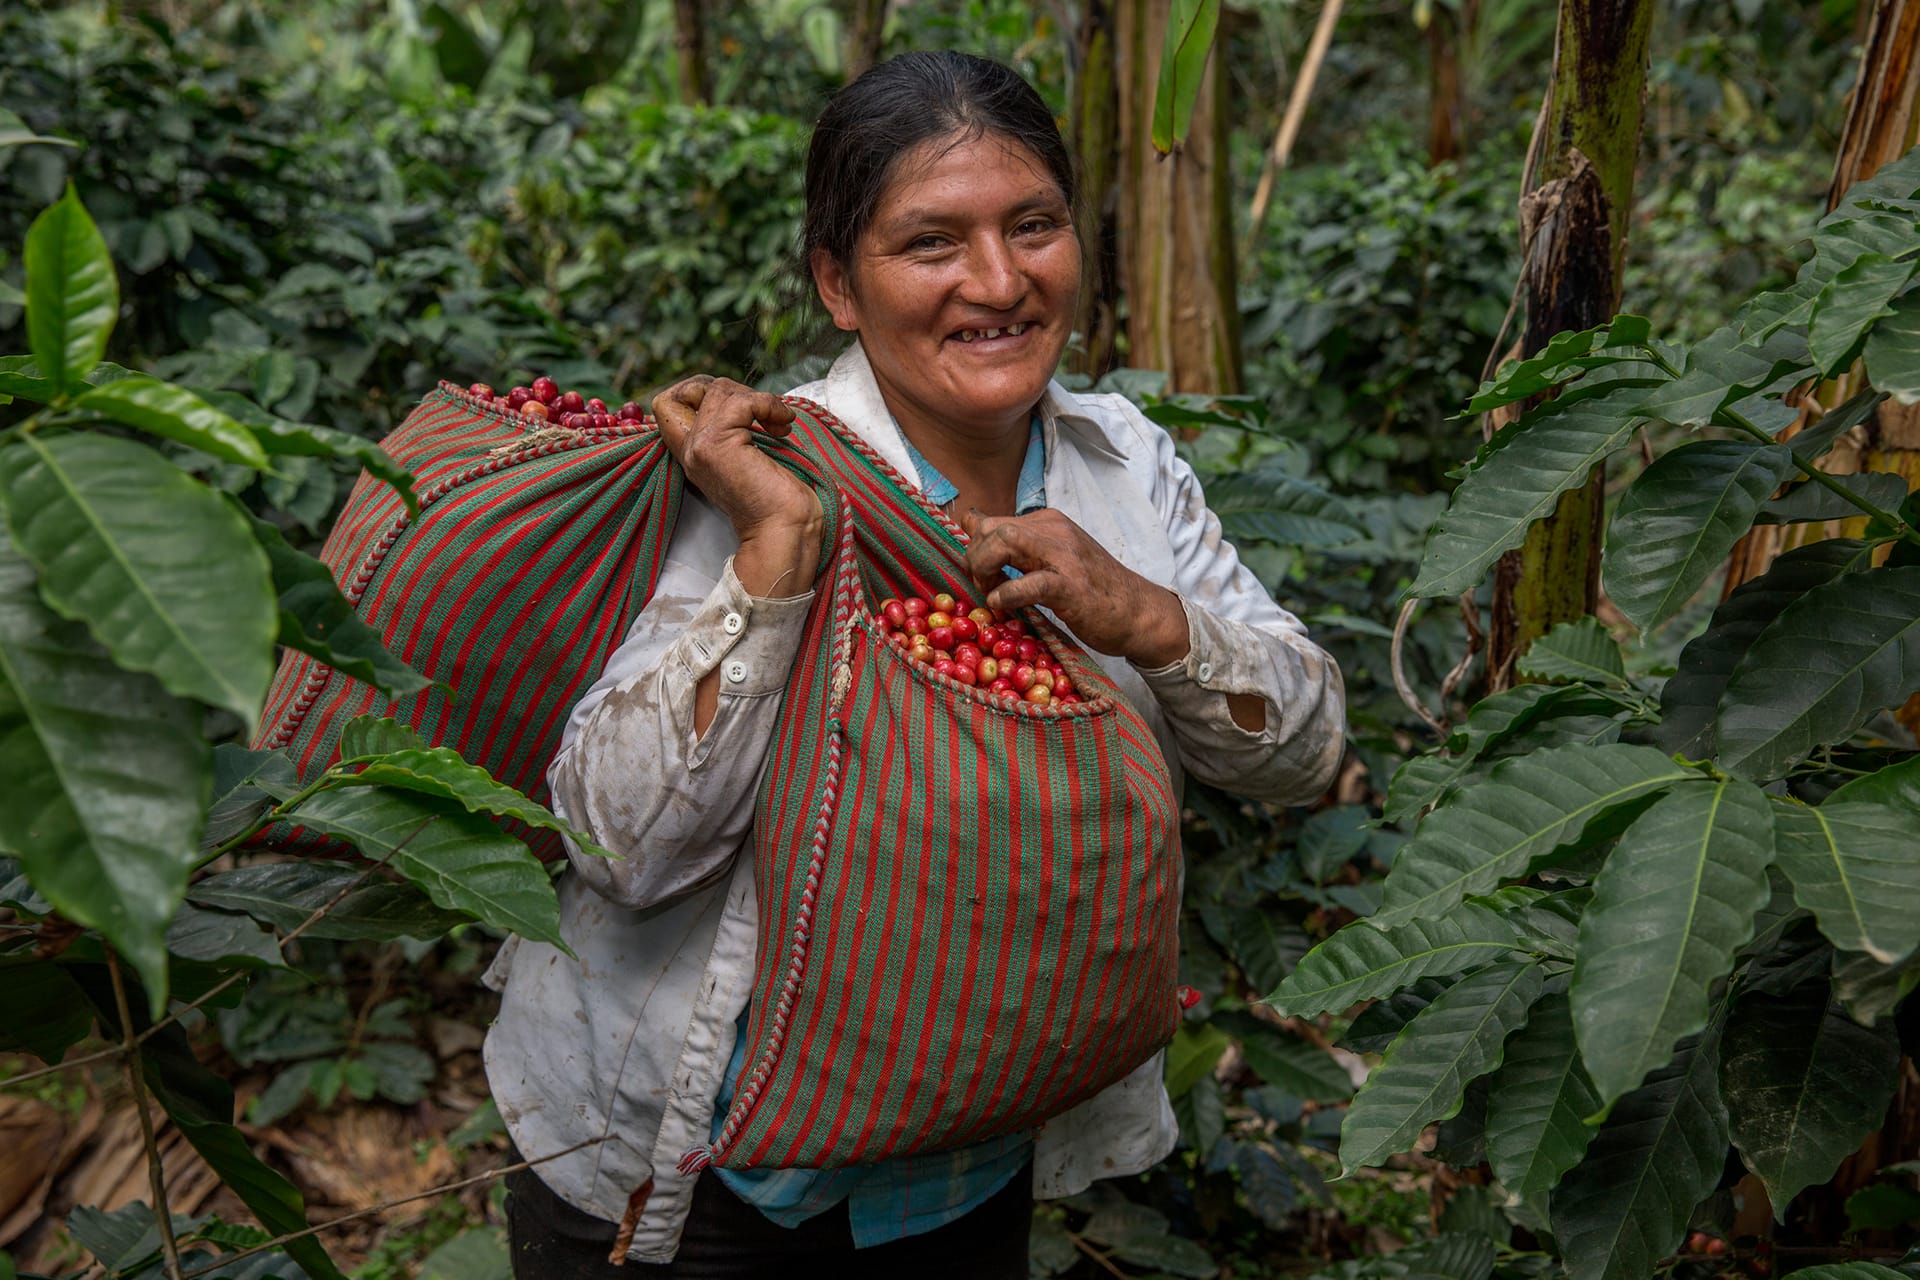 Fairtrade coffee producer